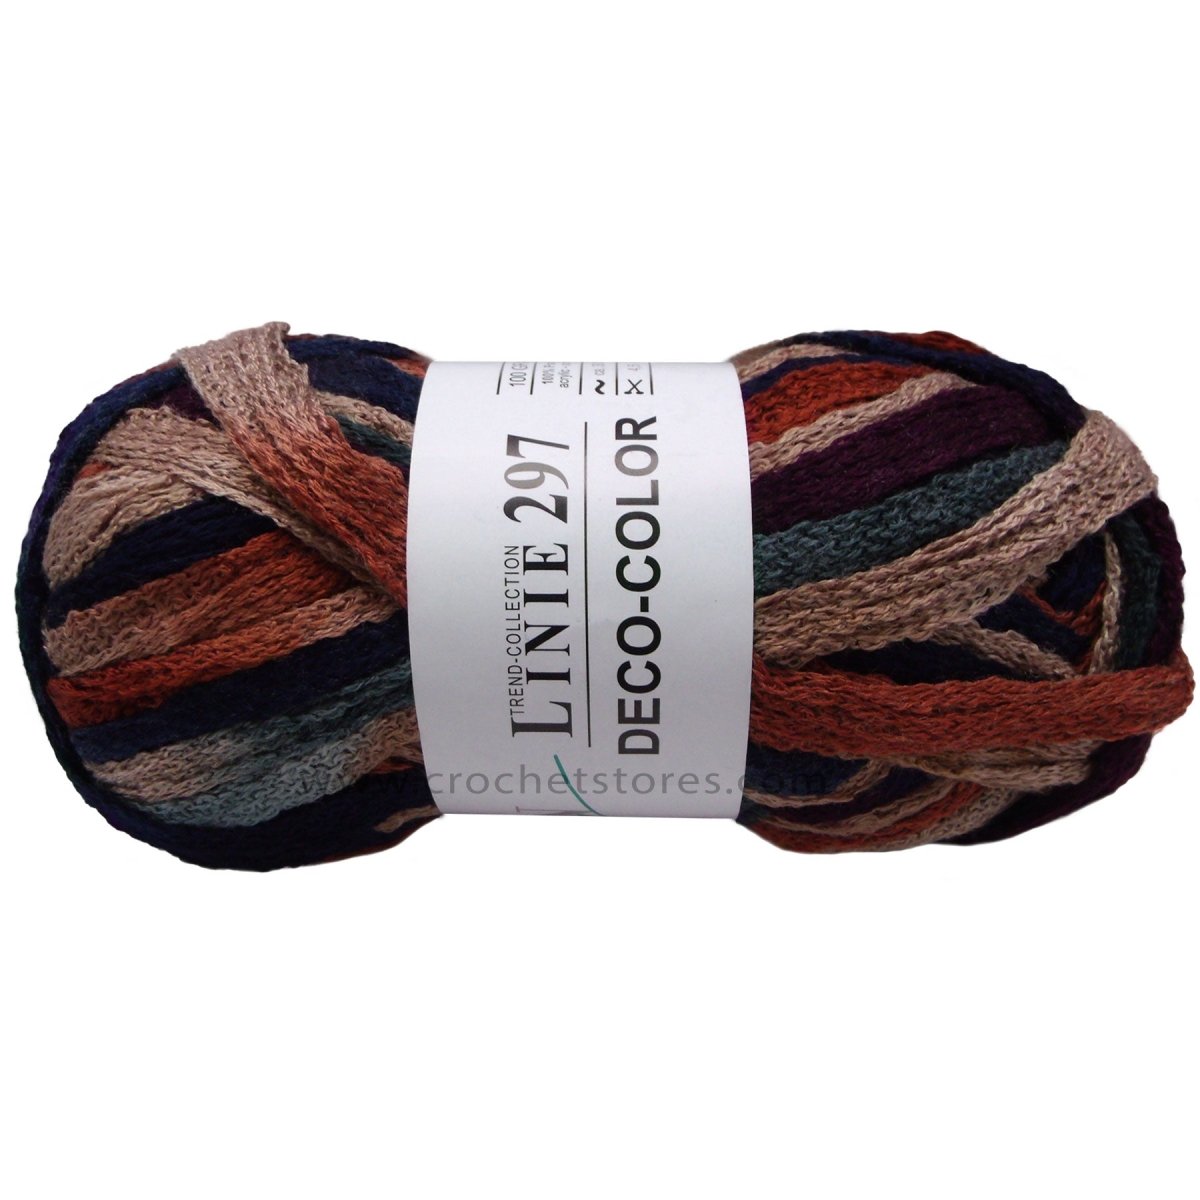 DECO COLOR - Crochetstores110297-1064014366124795